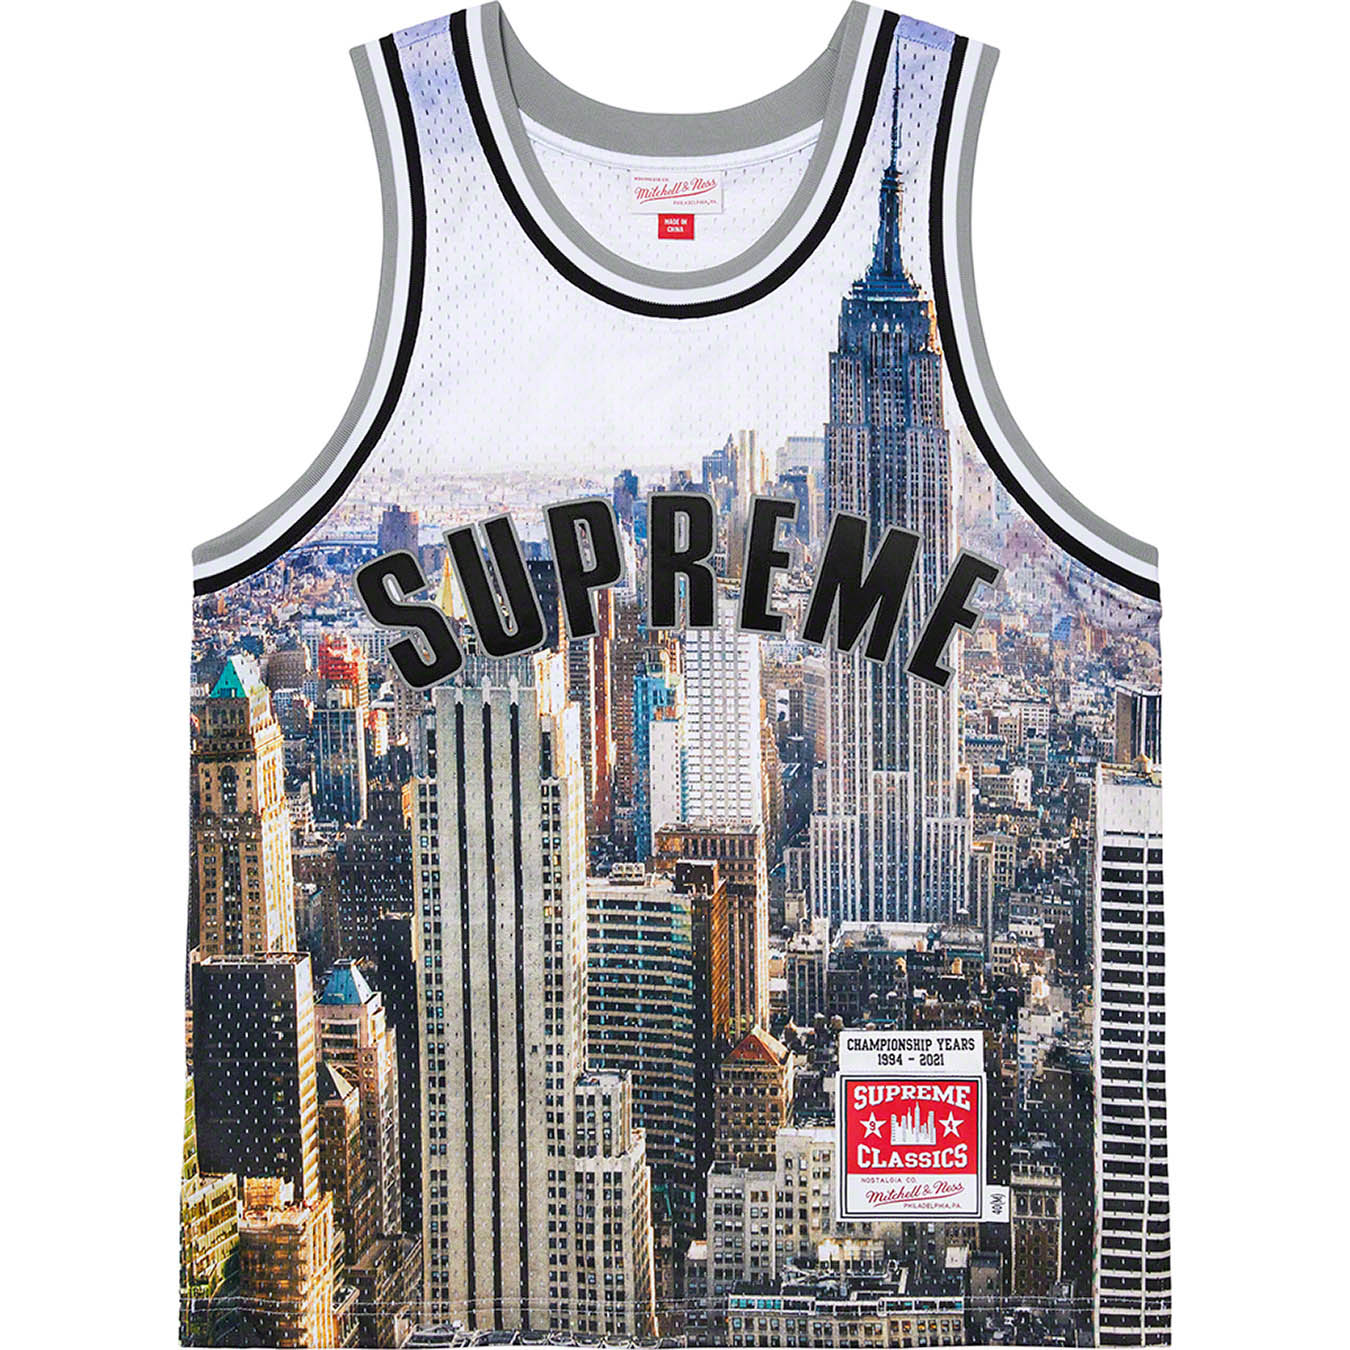 Supreme®/Mitchell & Ness® Basketball Jersey